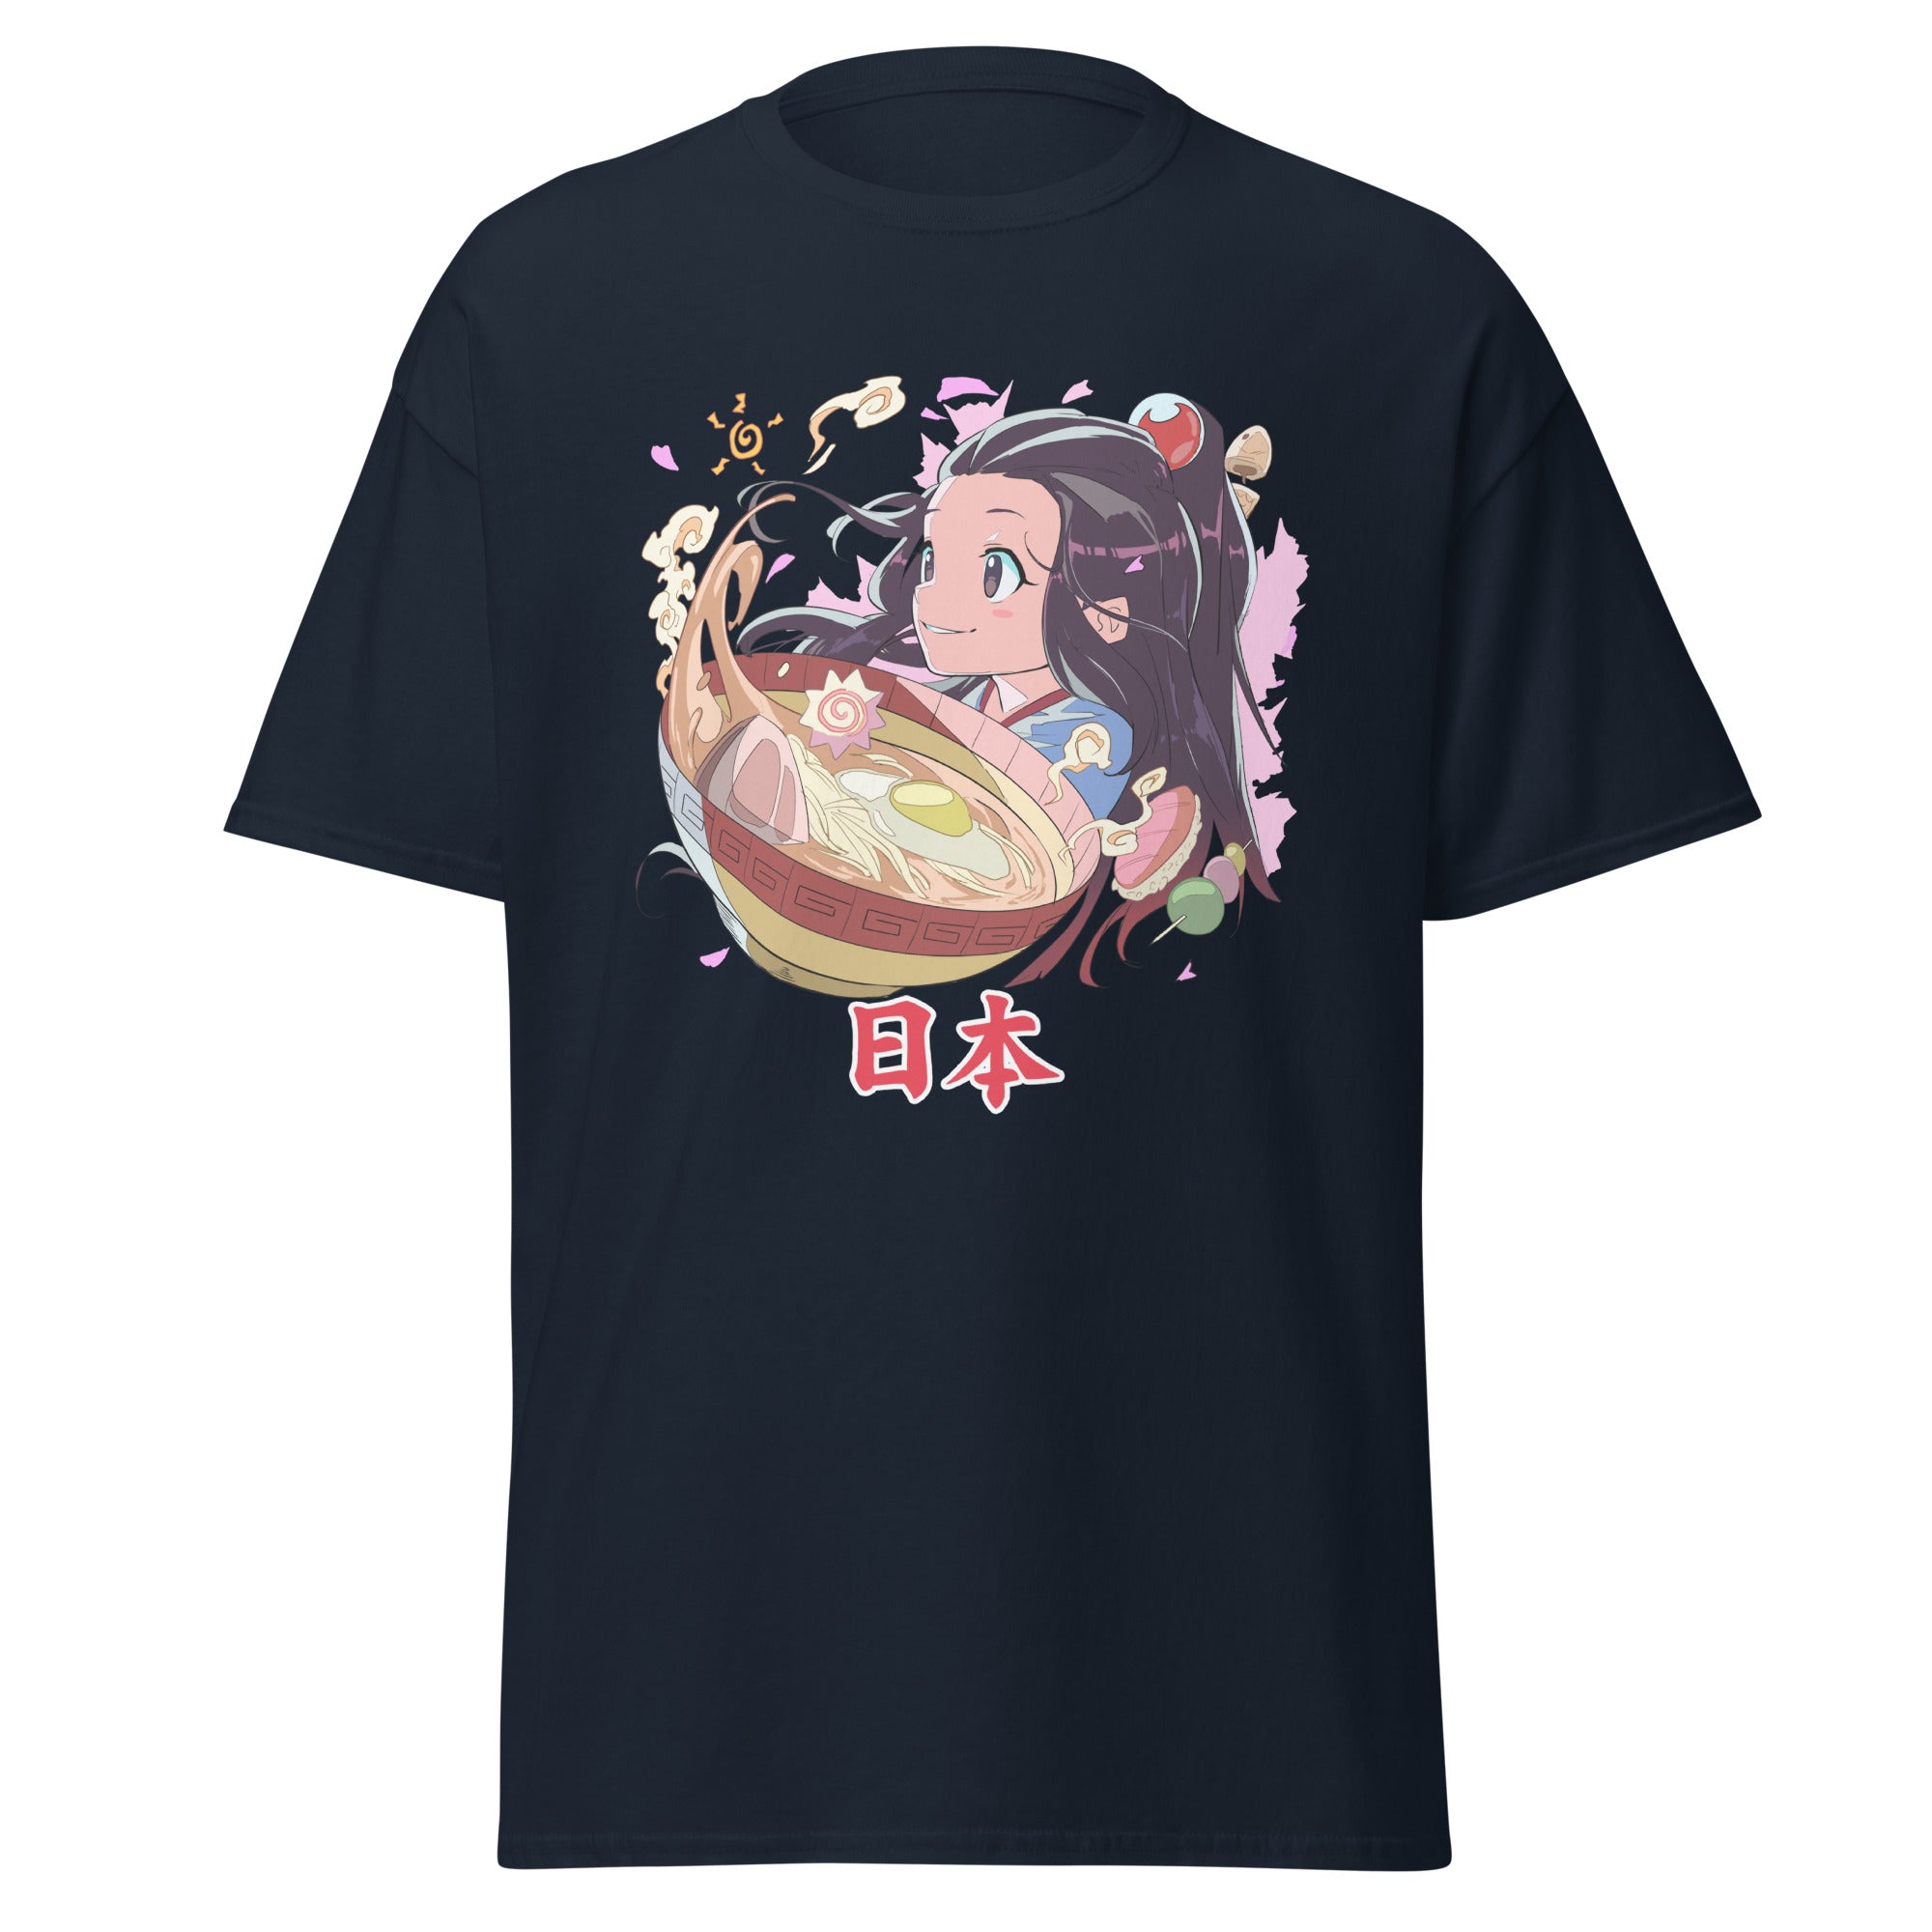 CW Japan Unisex T-Shirt